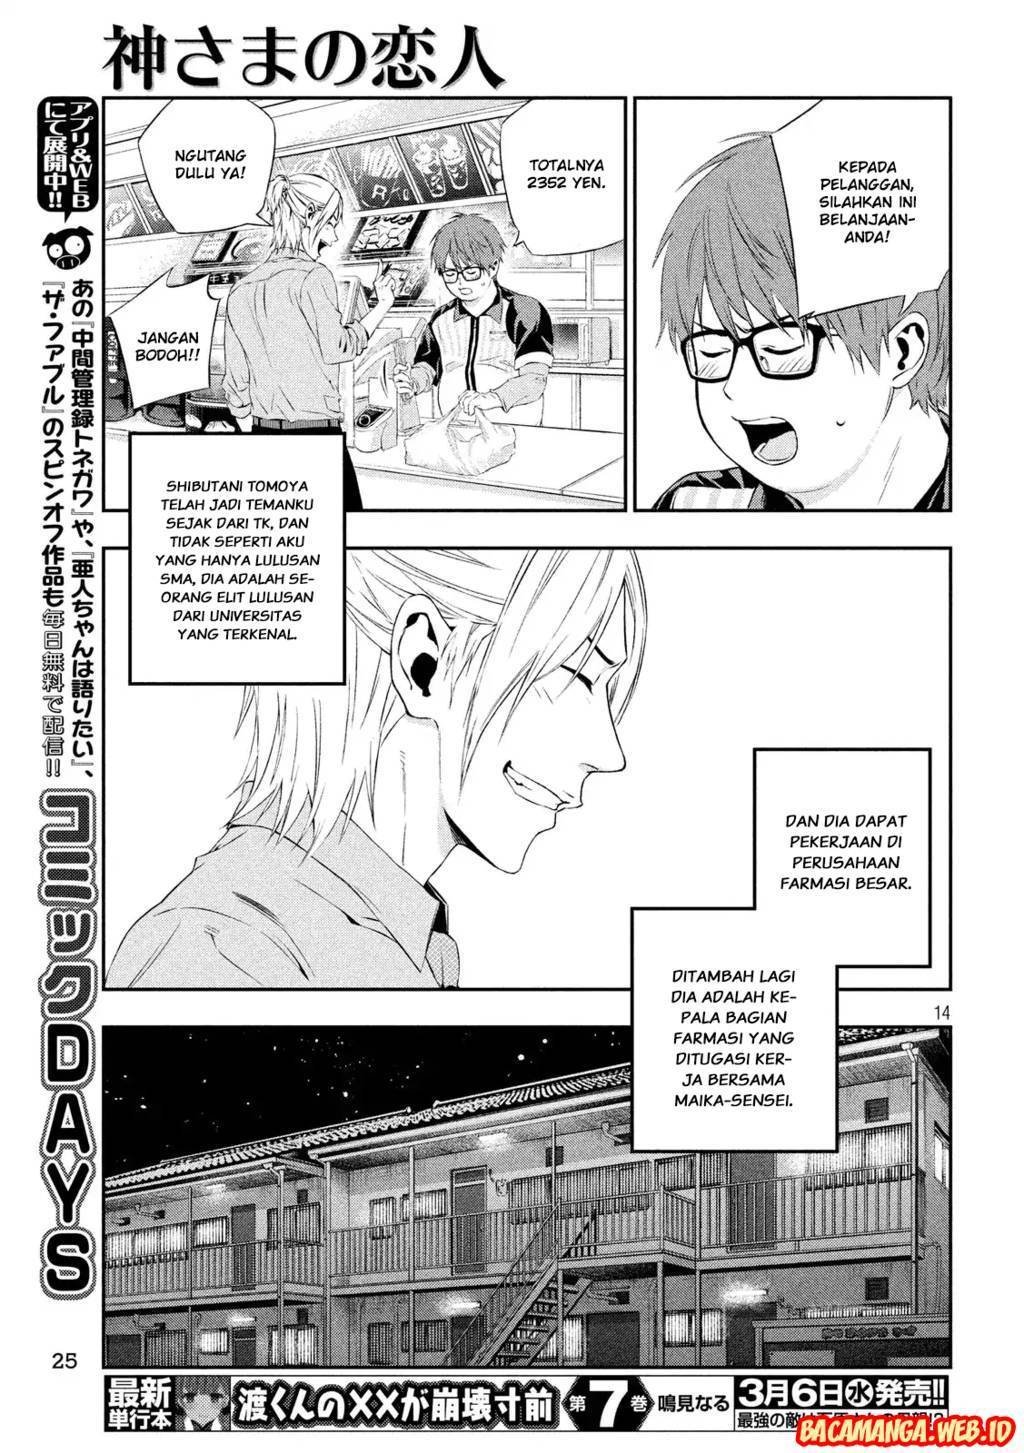 Baca Kamisama no Koibito Chapter 1  - GudangKomik